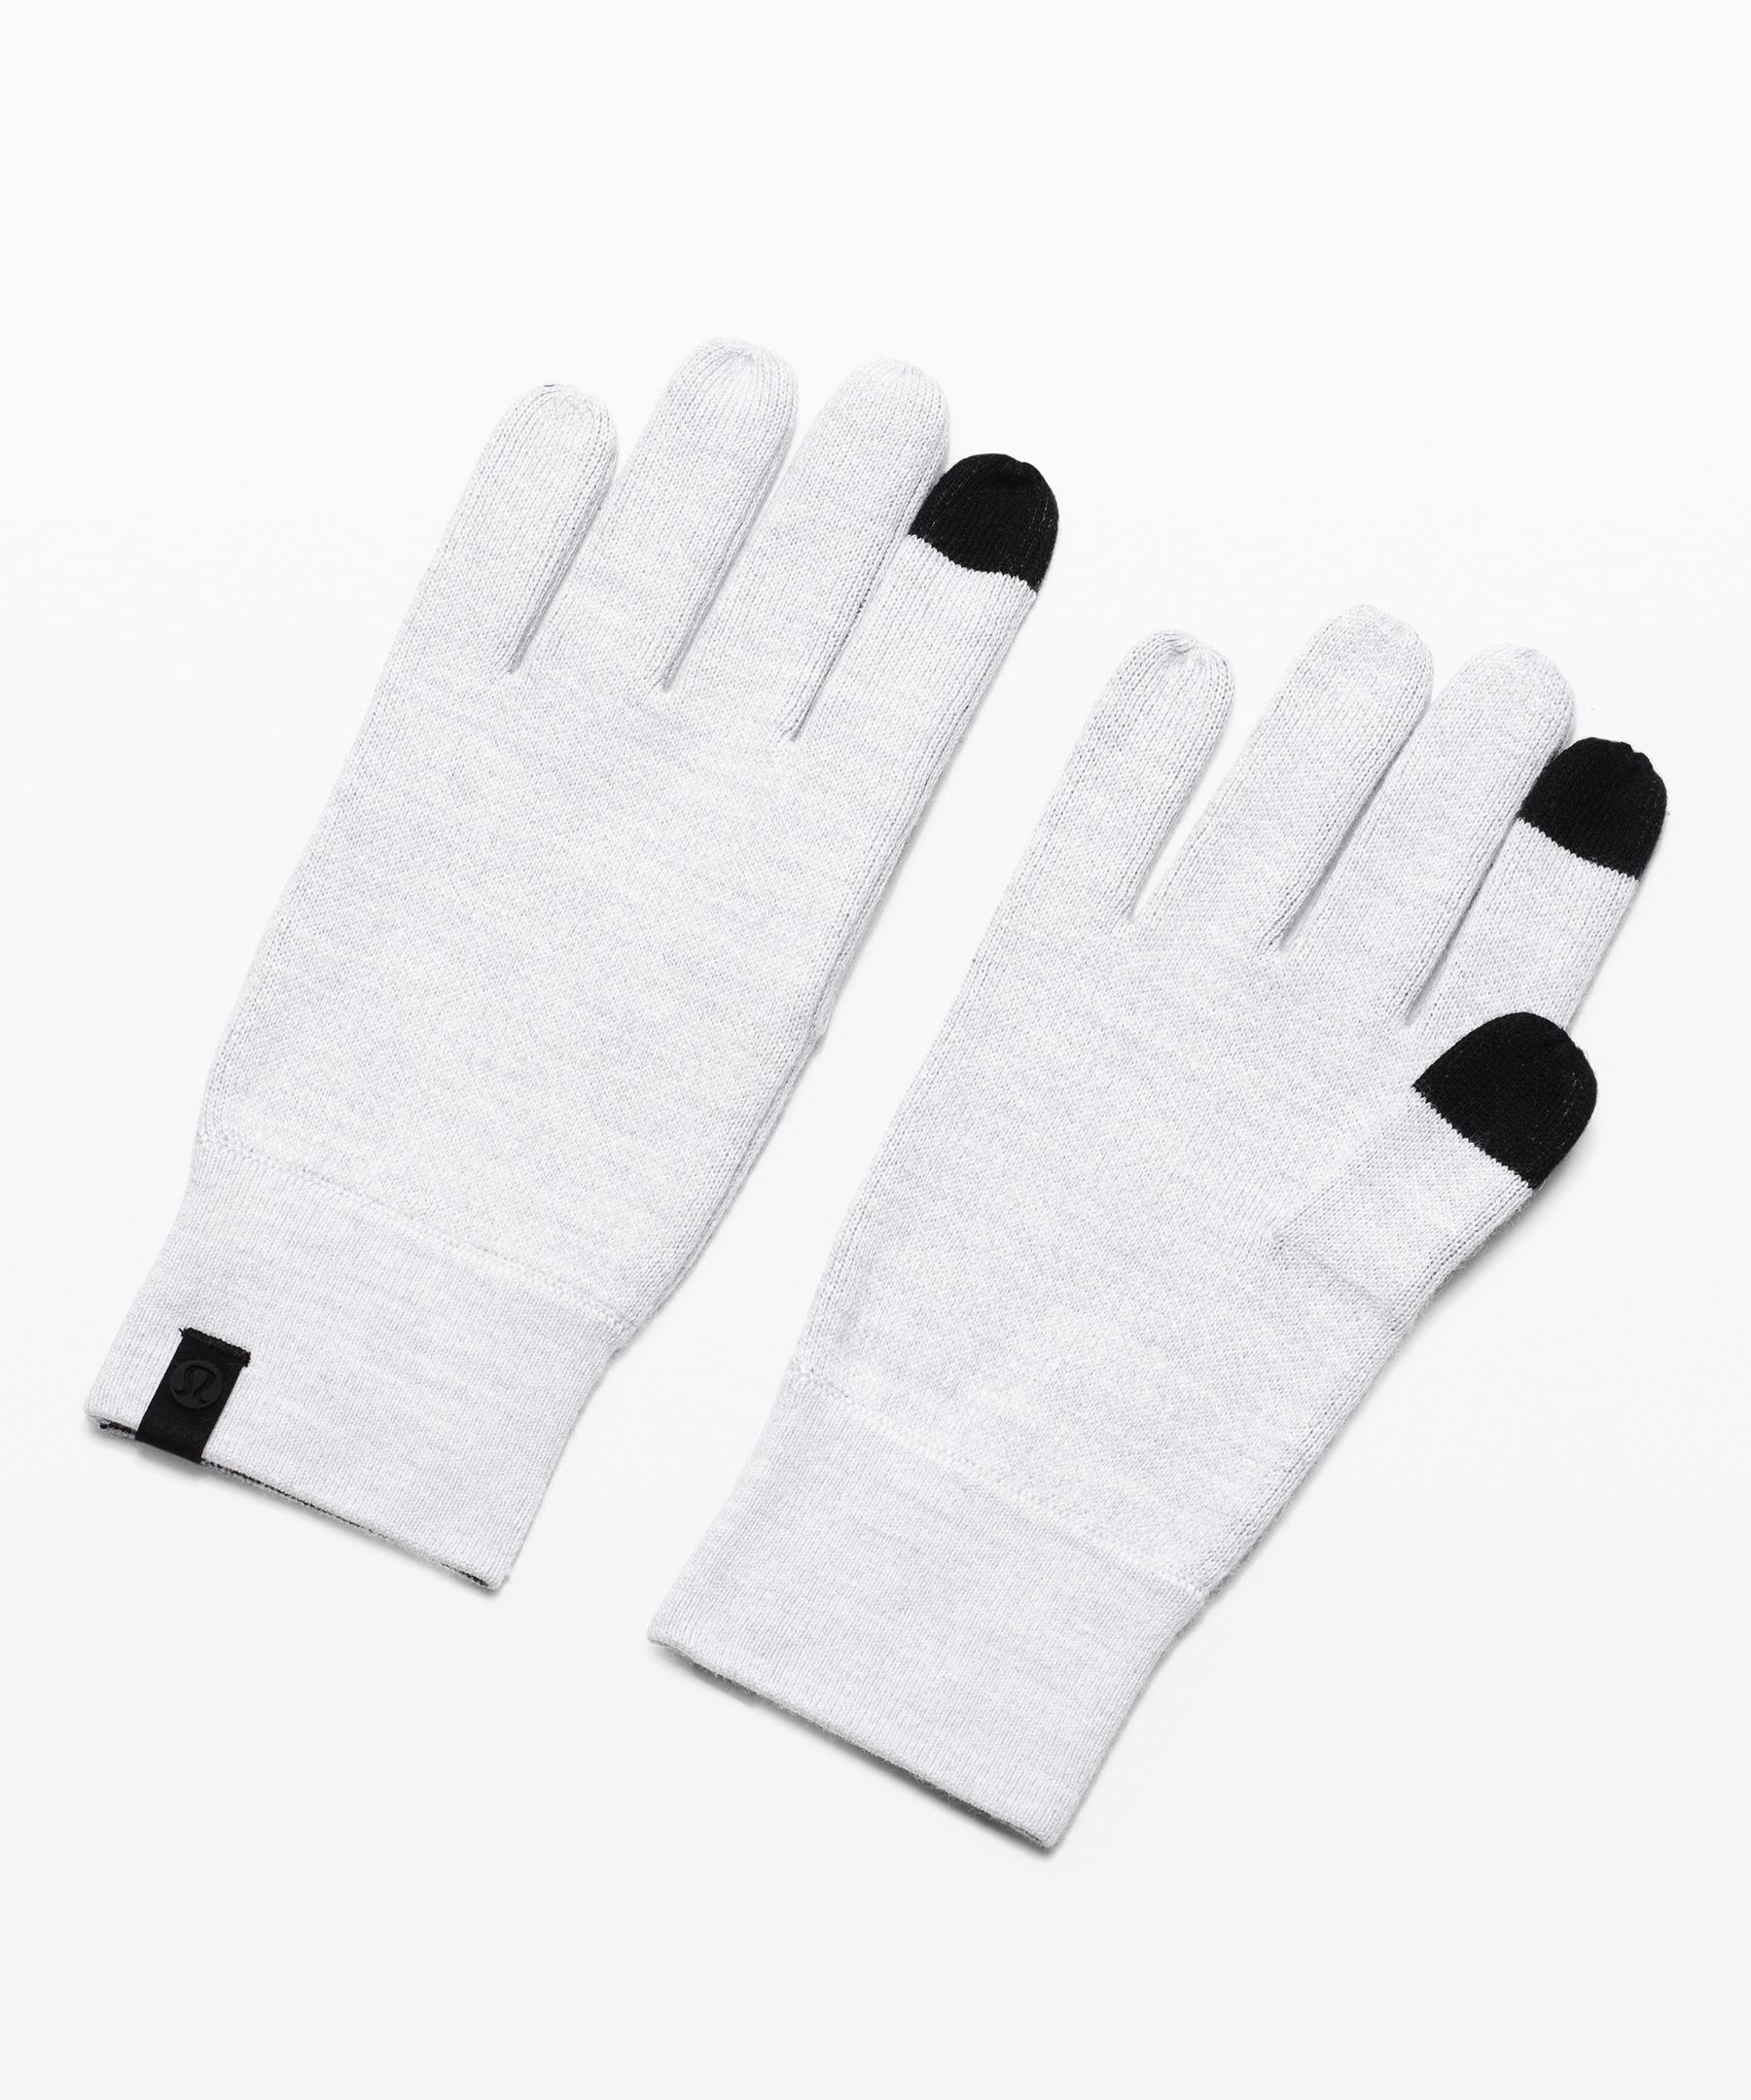 lululemon gloves mens